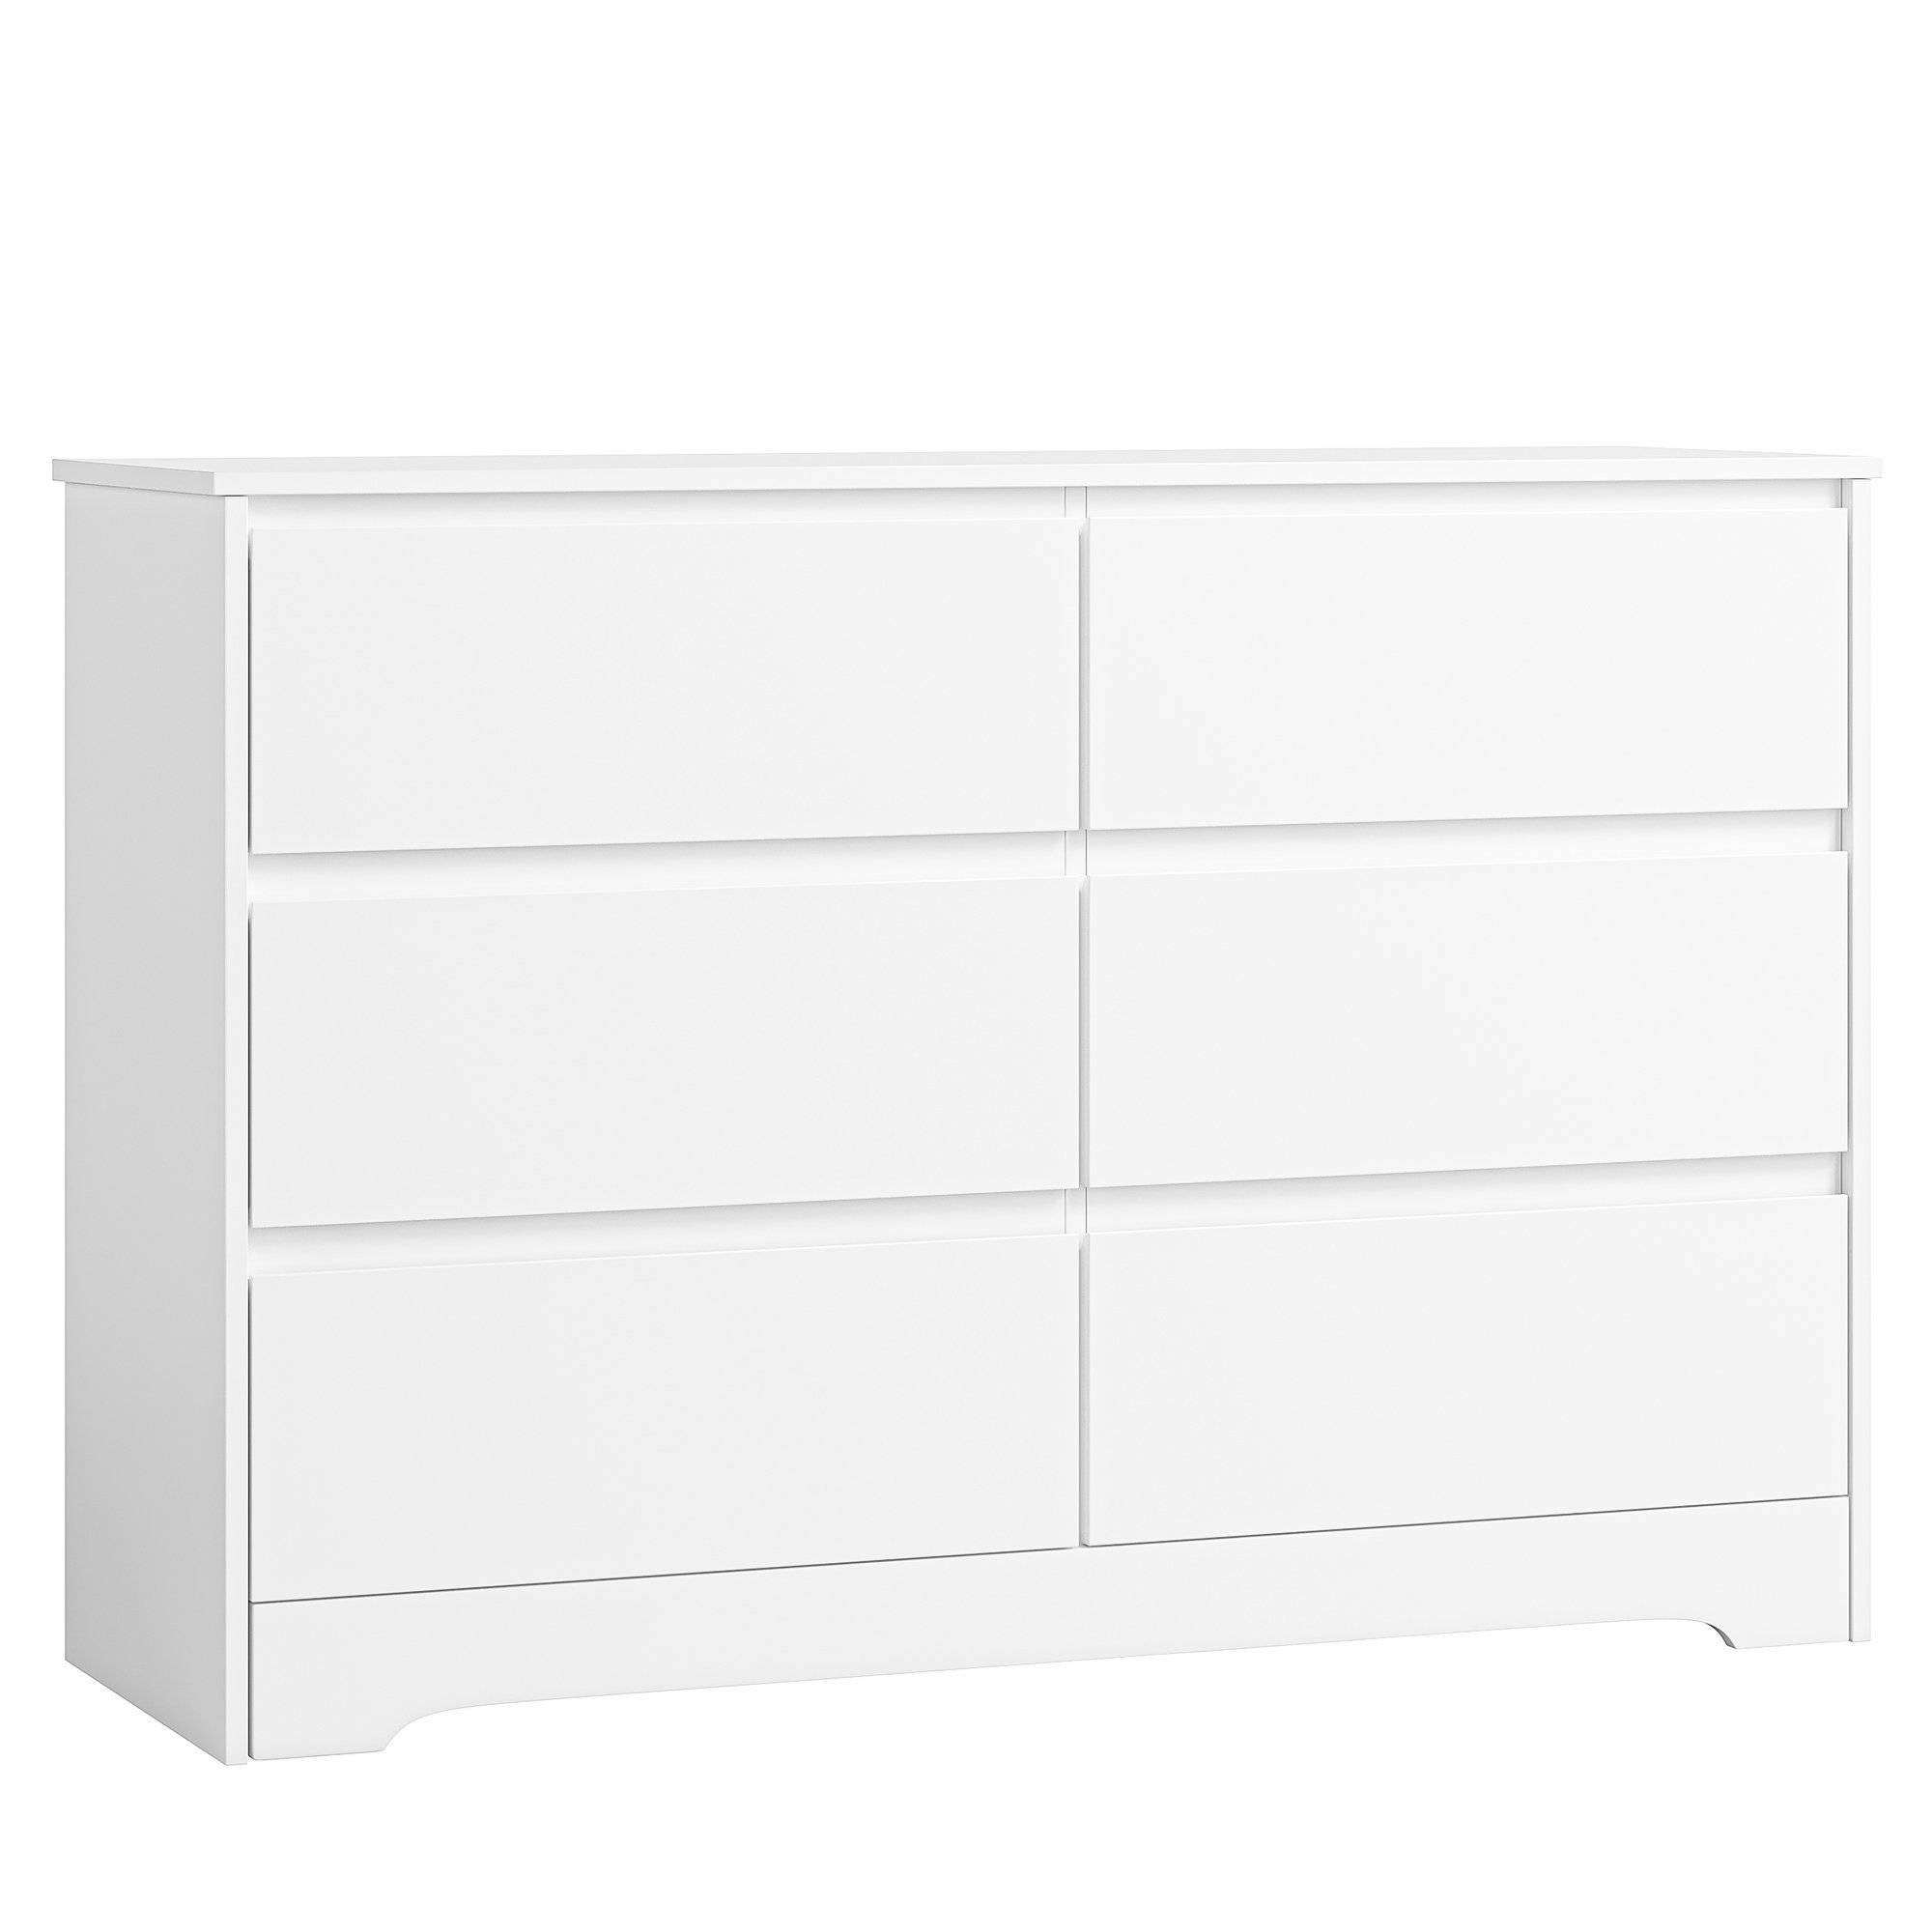 Homfa Kommode, Sideboard mit 6 Schubladen, Schlafzimmer Kommode, weiß, 120x40x82cm